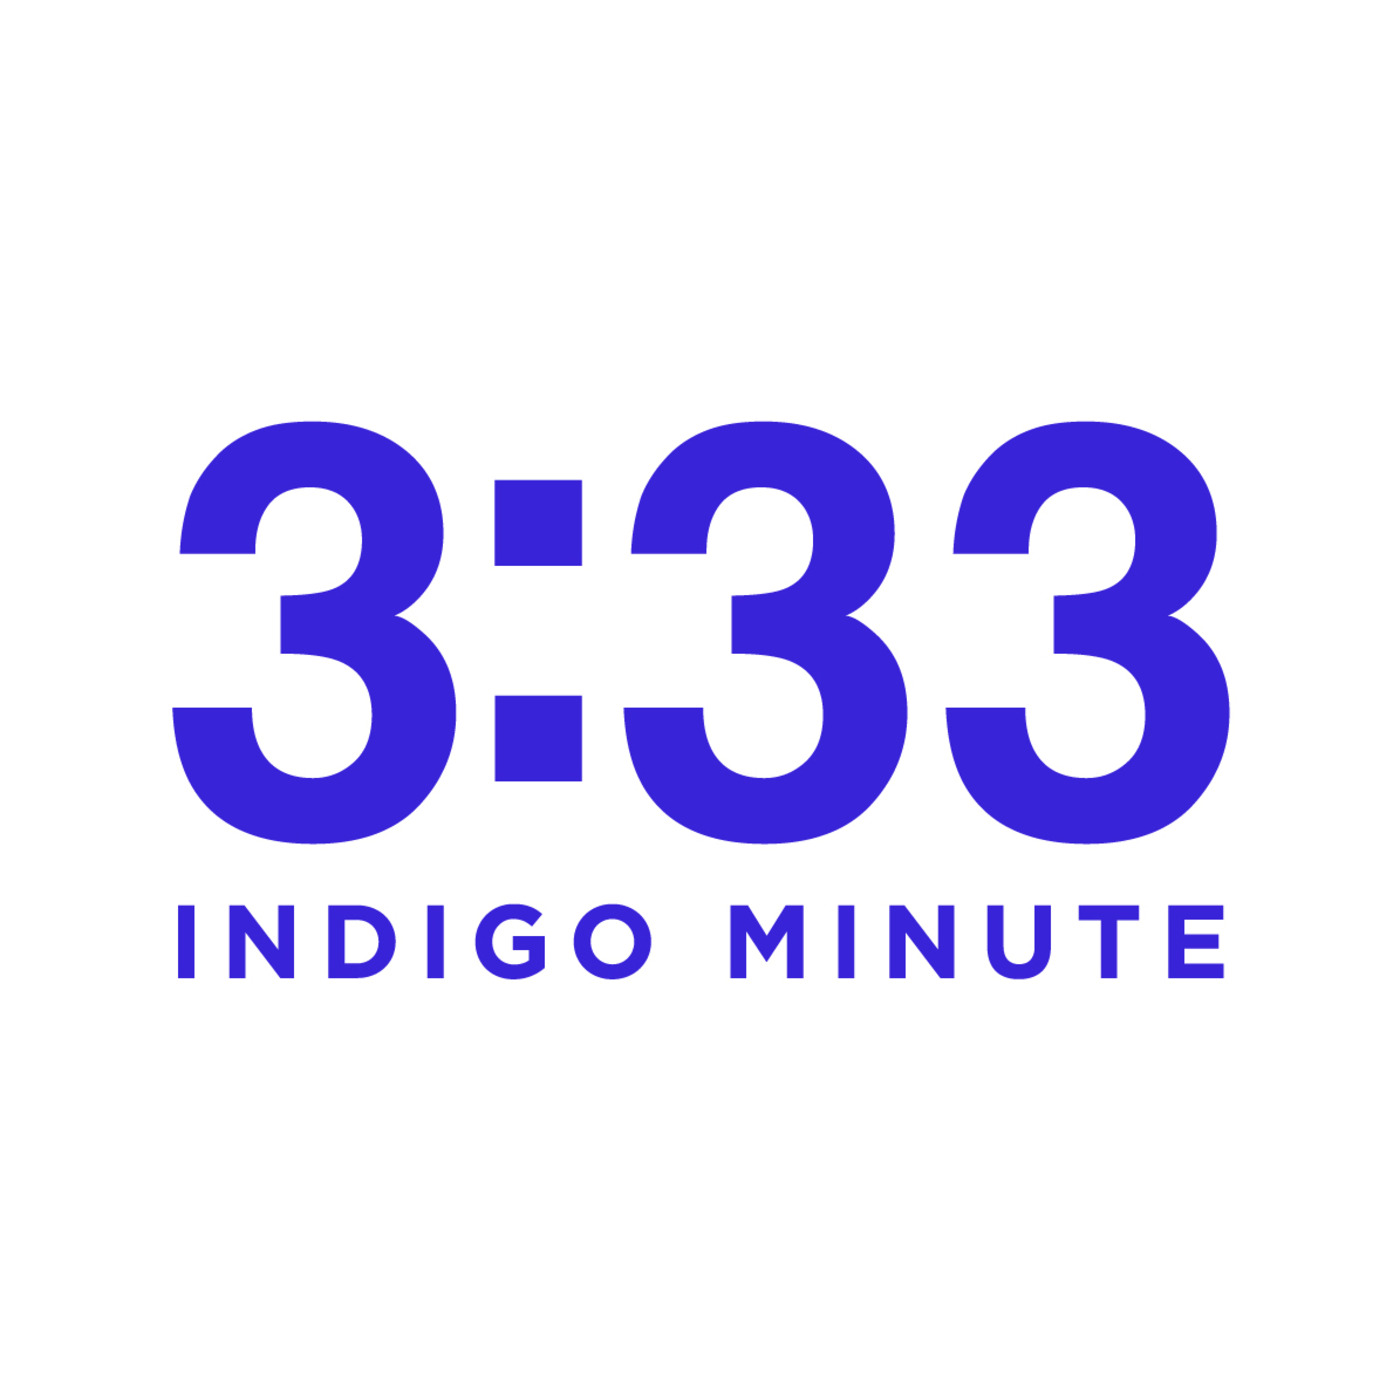 Indigo Minute